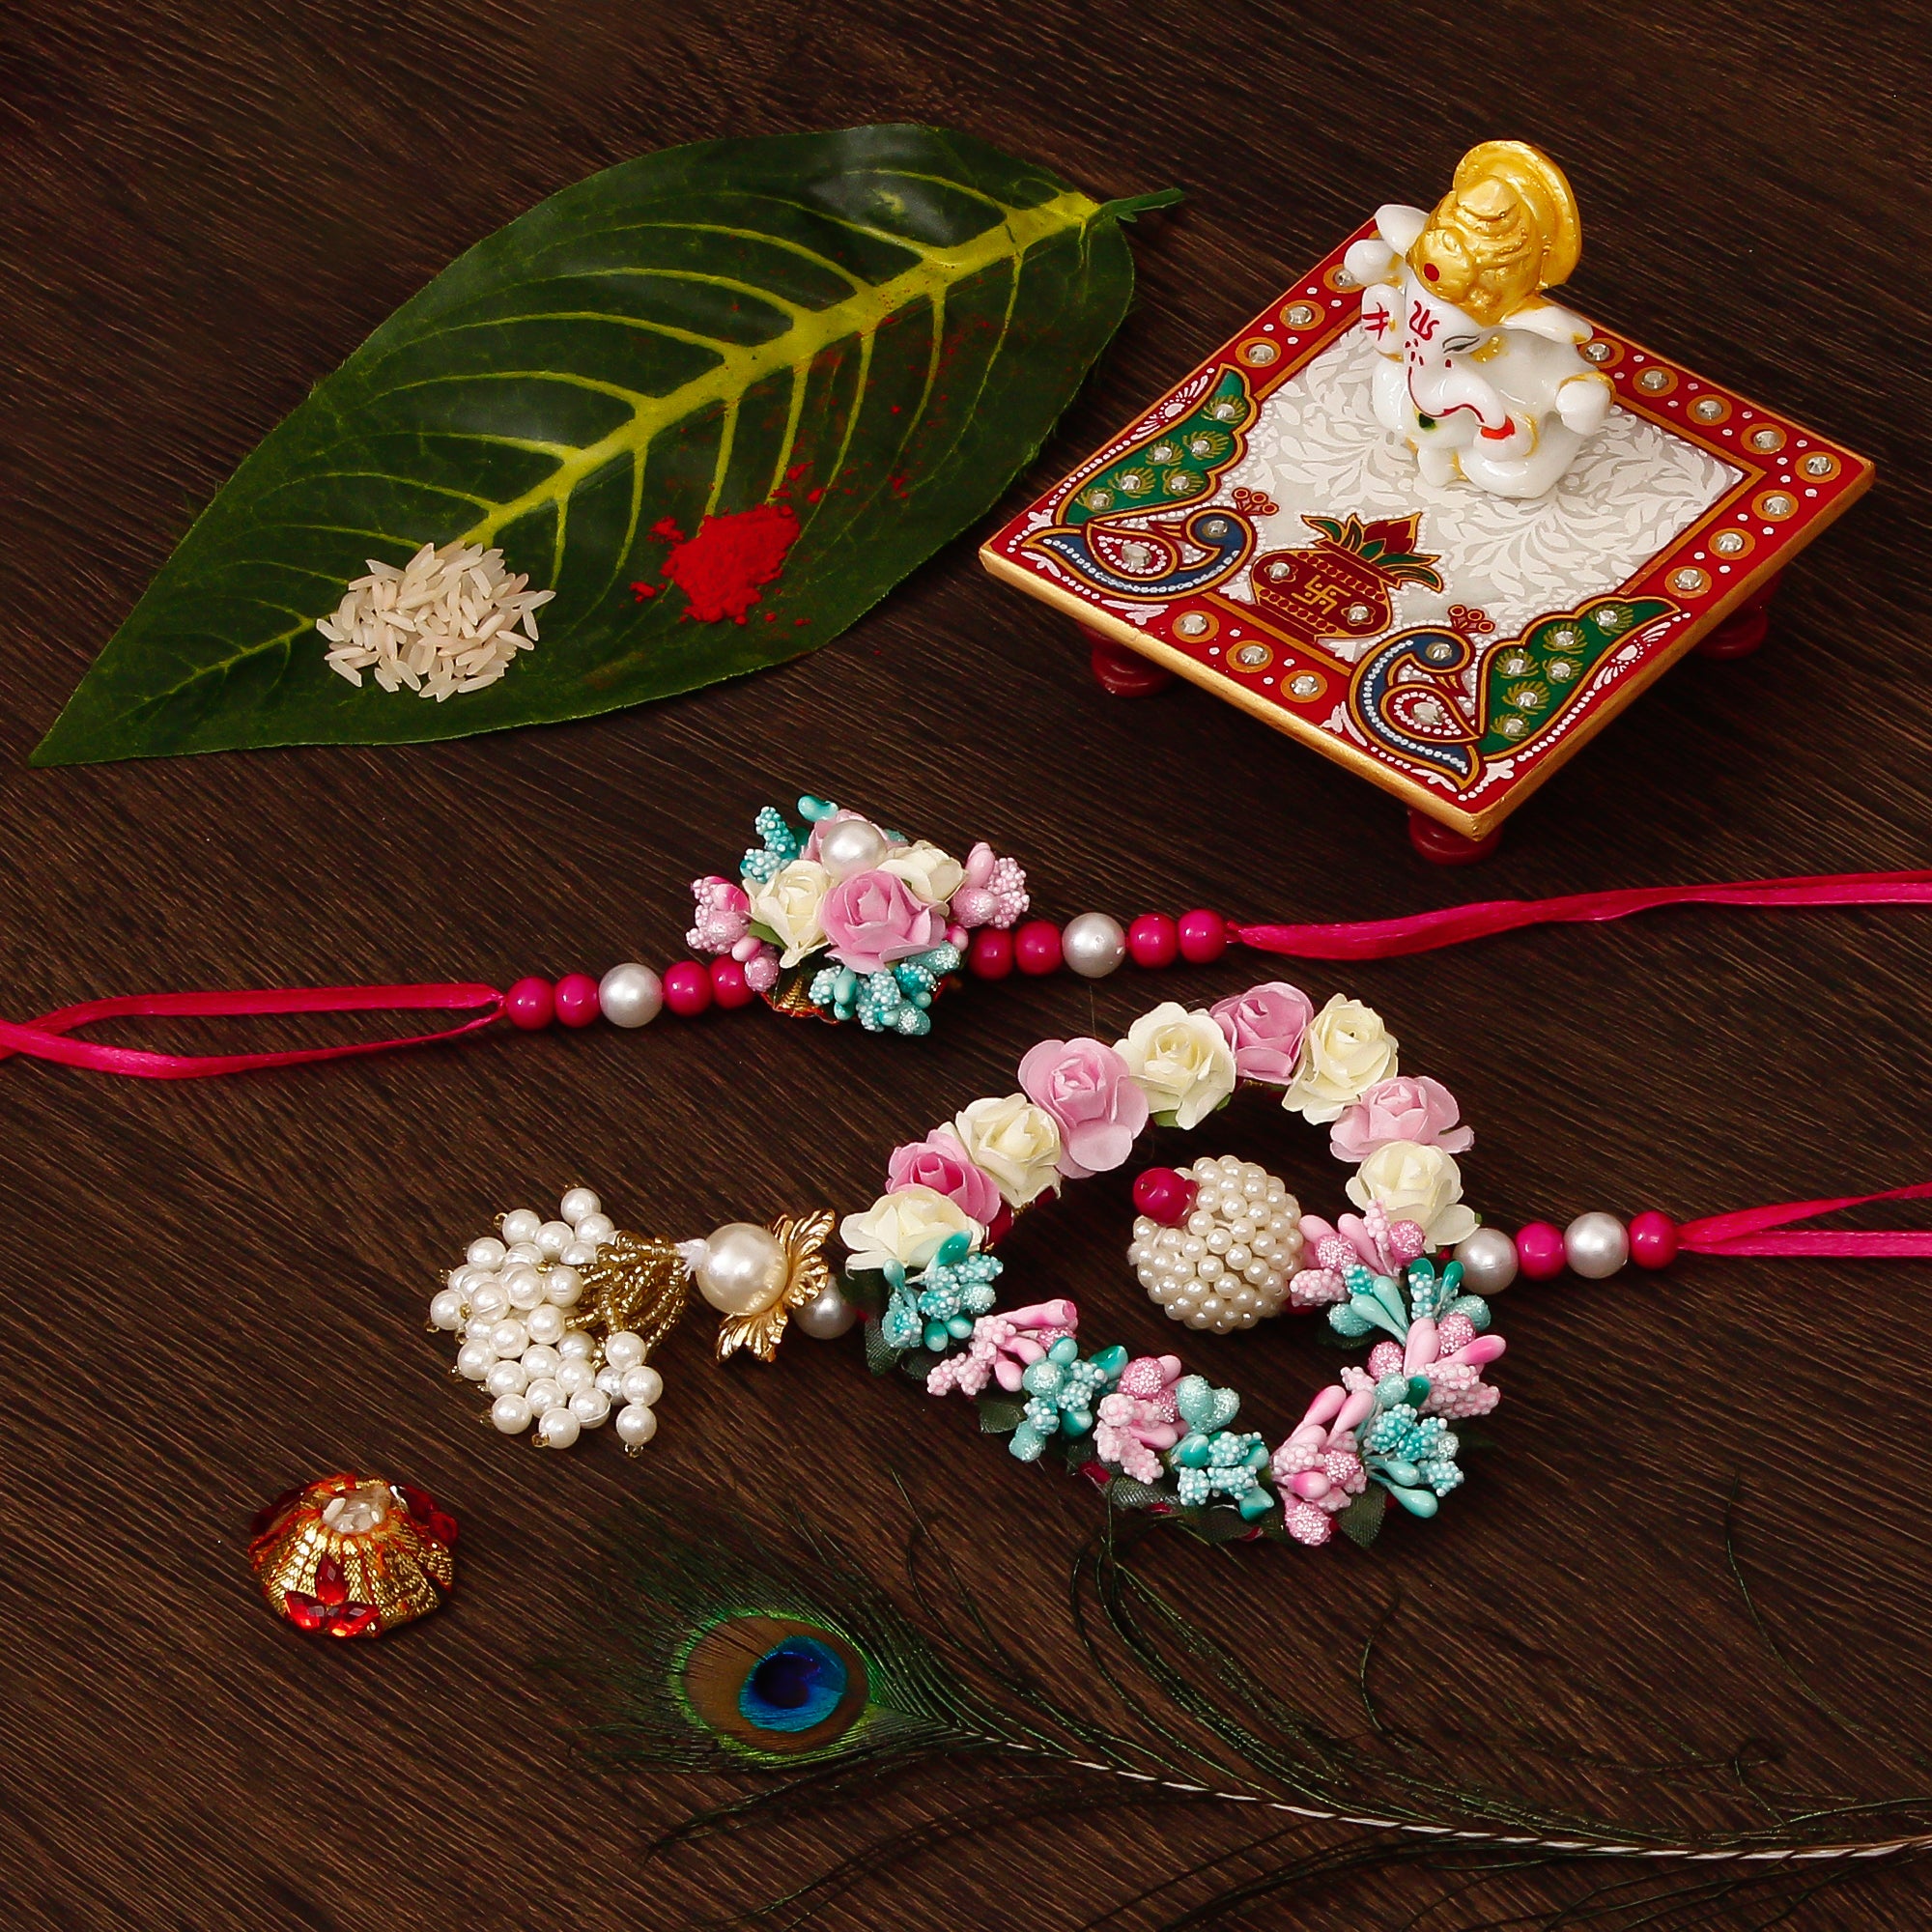 Floral and Heart Shape Bhaiya Bhabhi Rakhi with Lord Ganesha Marble Chowki and Roli Tikka Matki